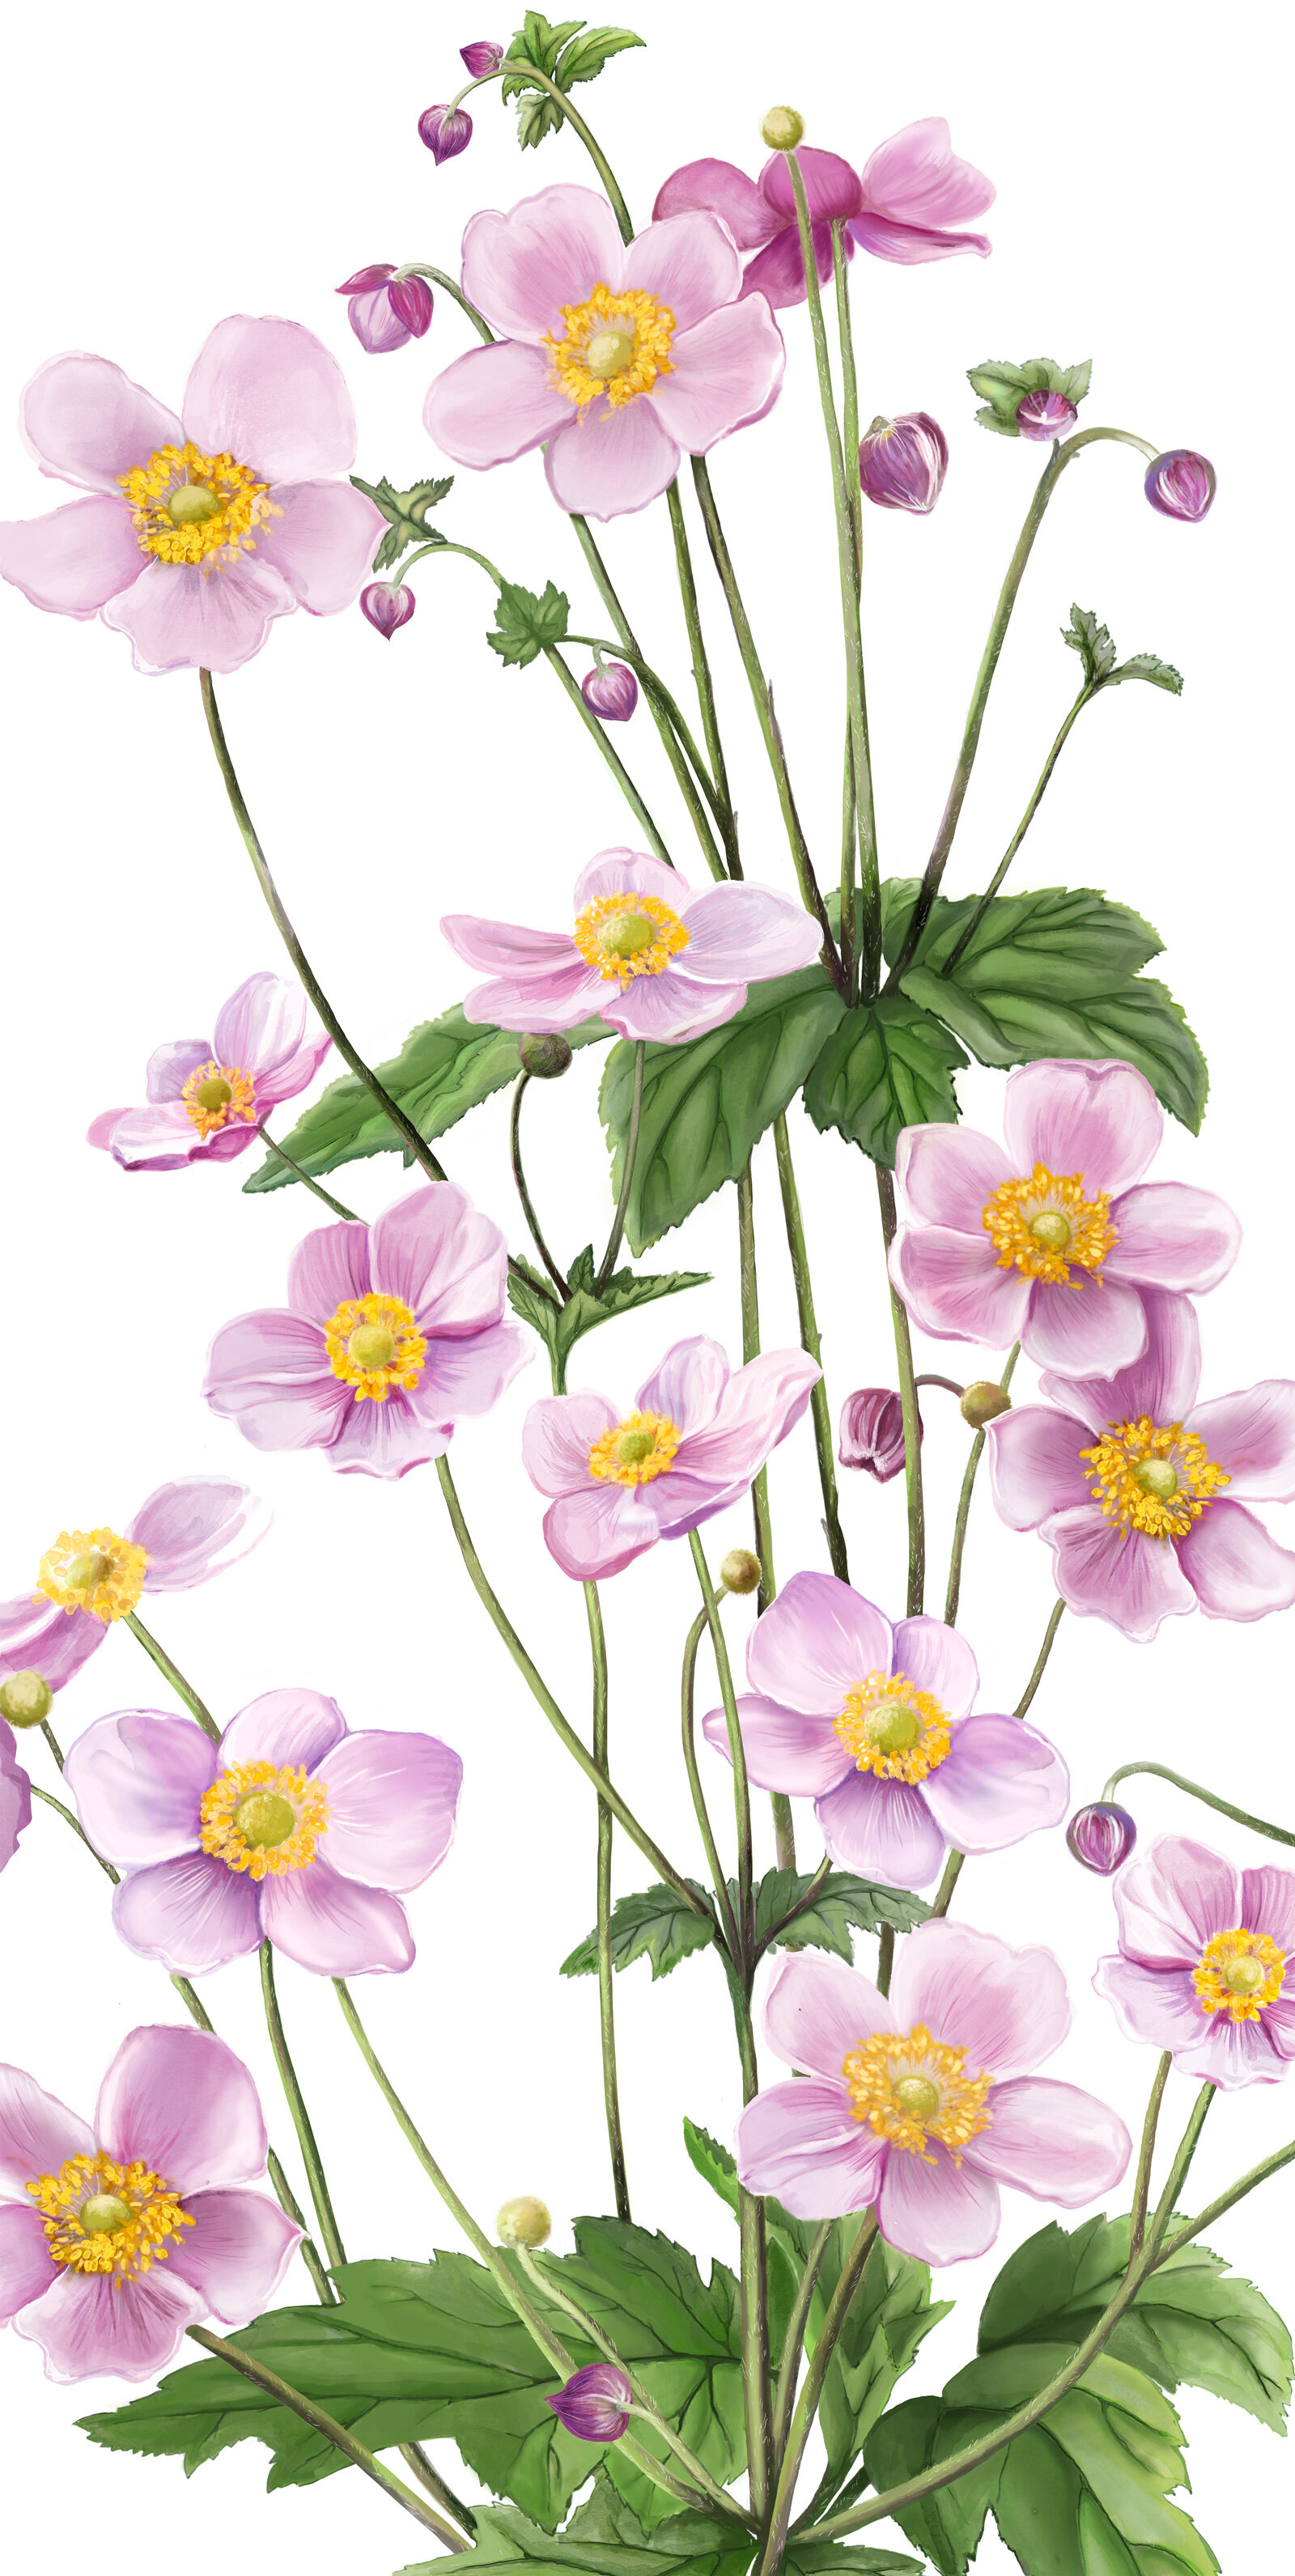 oculus-illustration-pflanzenillustration-hauert-verpackungsdesign-anemone